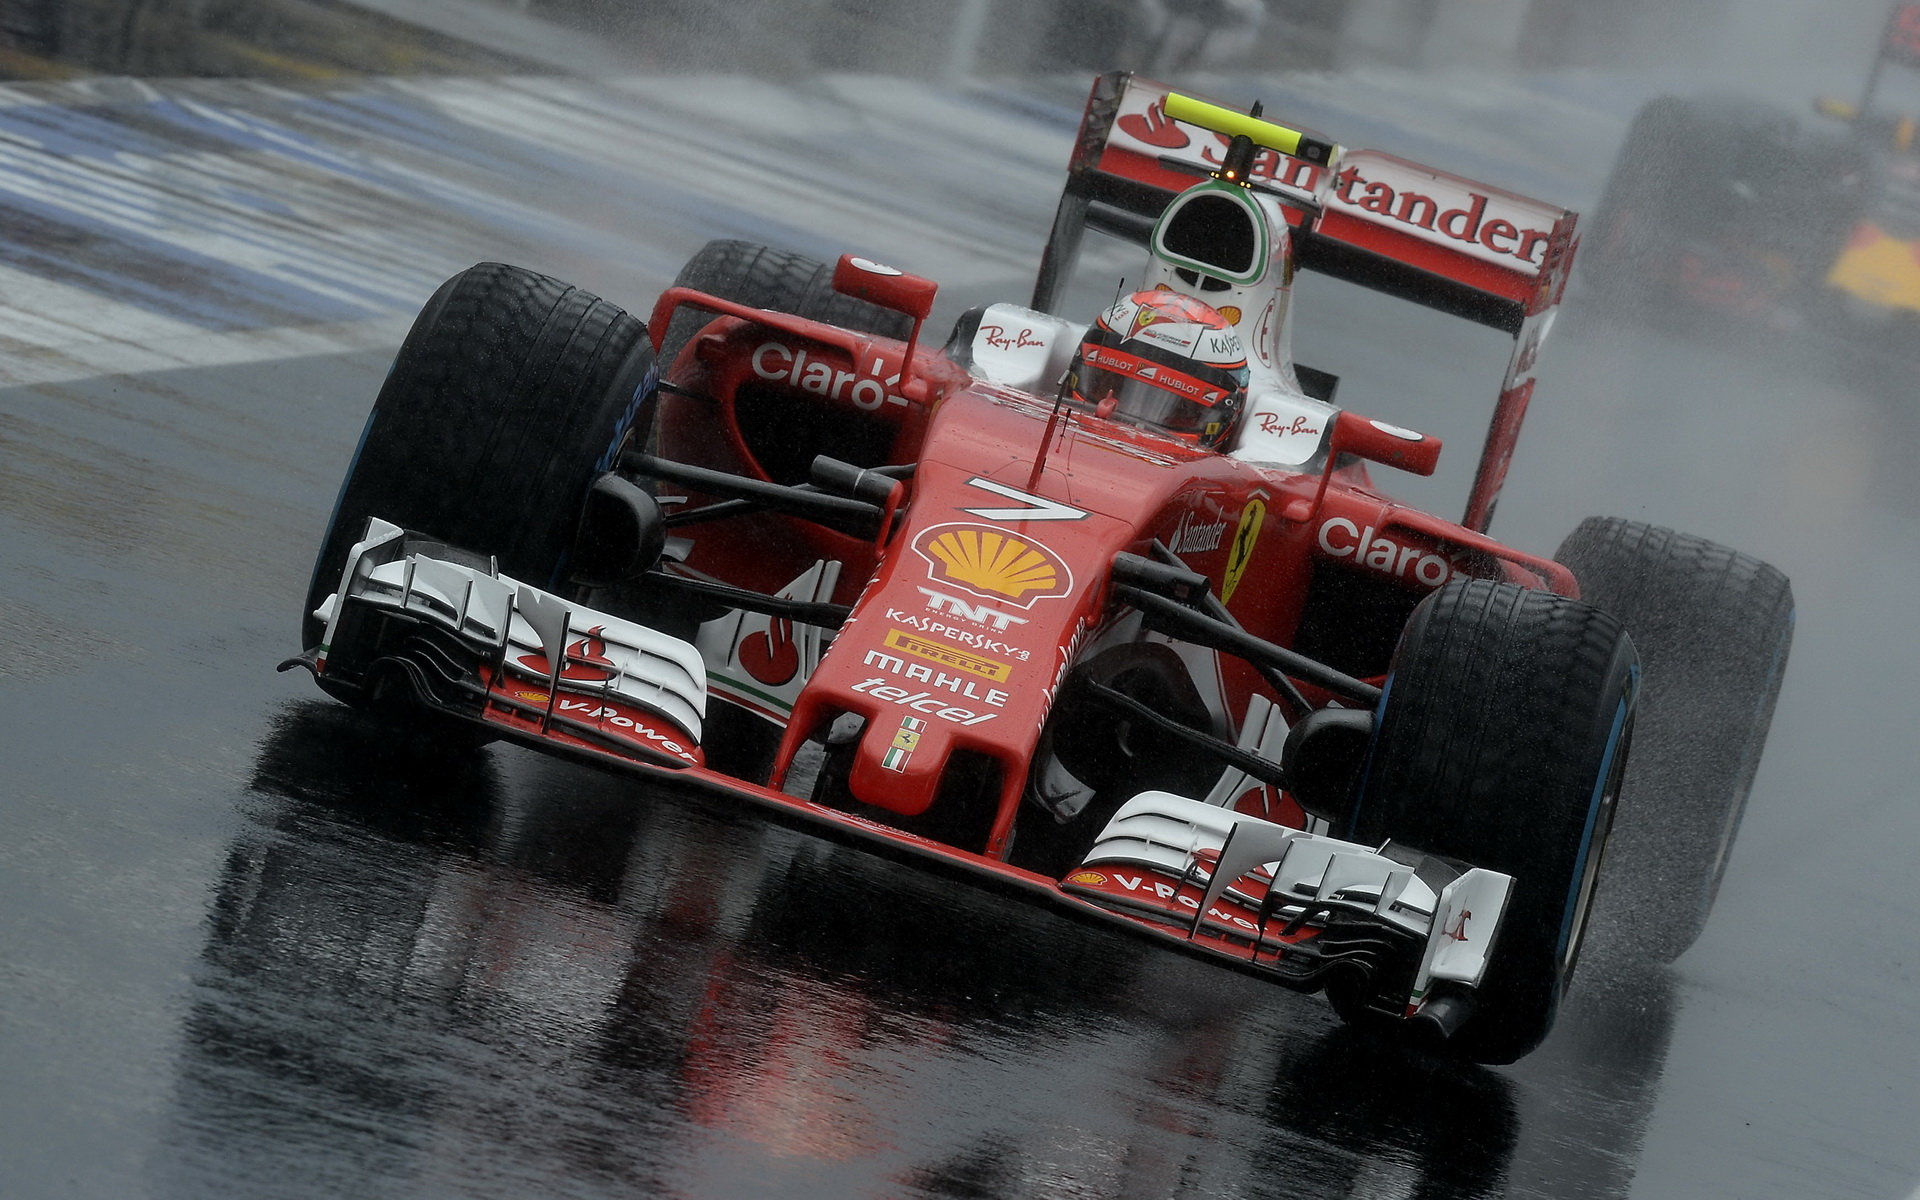 Kimi Räikkönen v kvalifikaci doplatil na chybu týmu, v závodě pak doháněl, co mohl